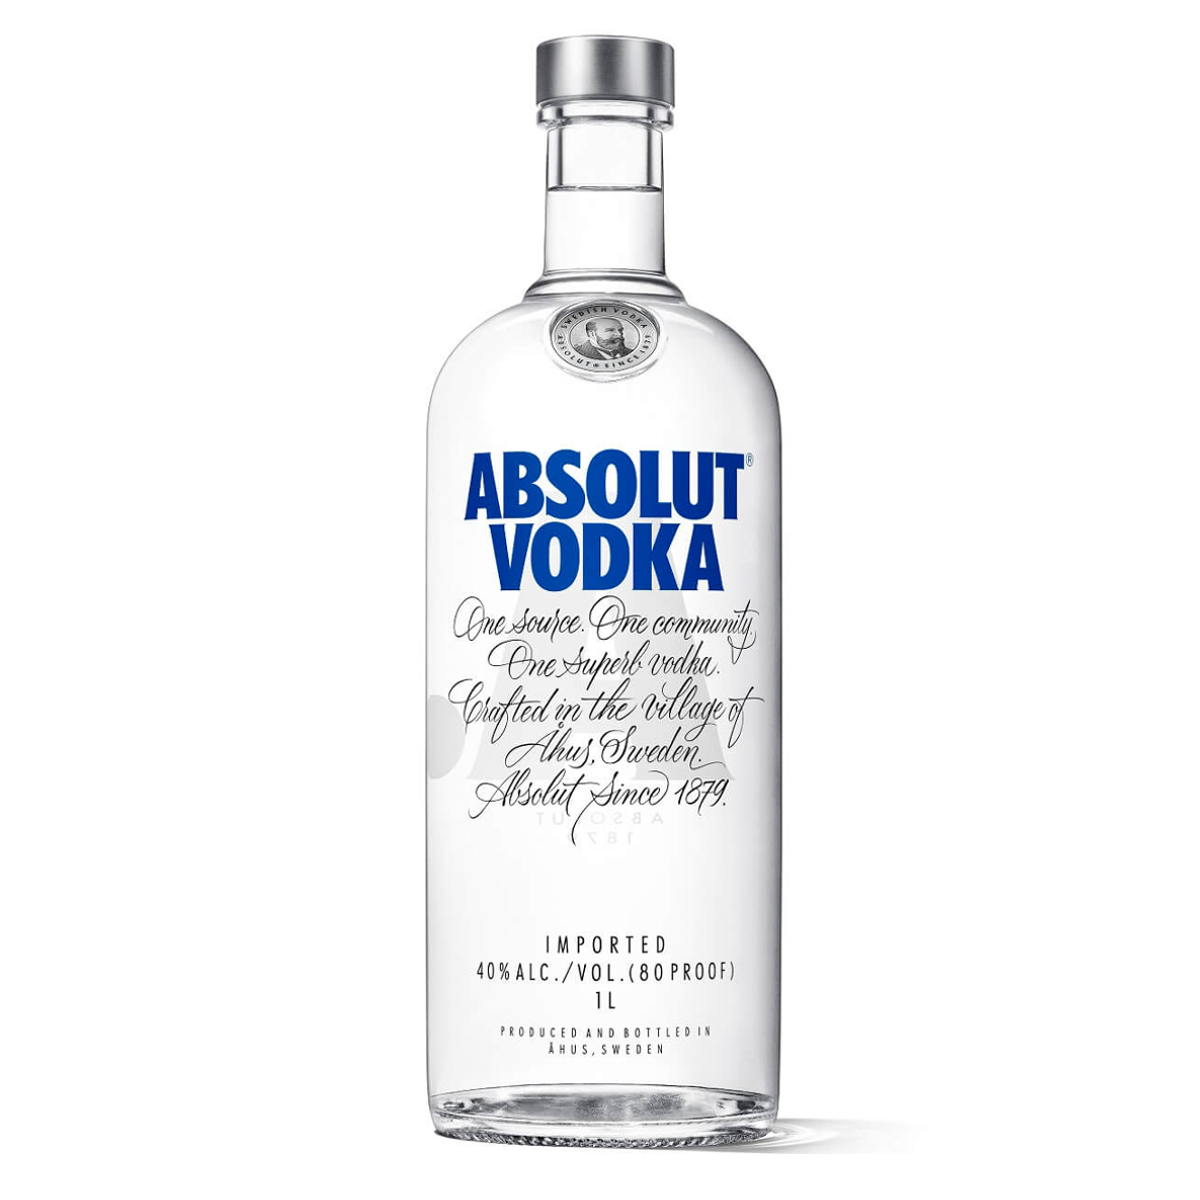 File:Absolut vodka bottle.png